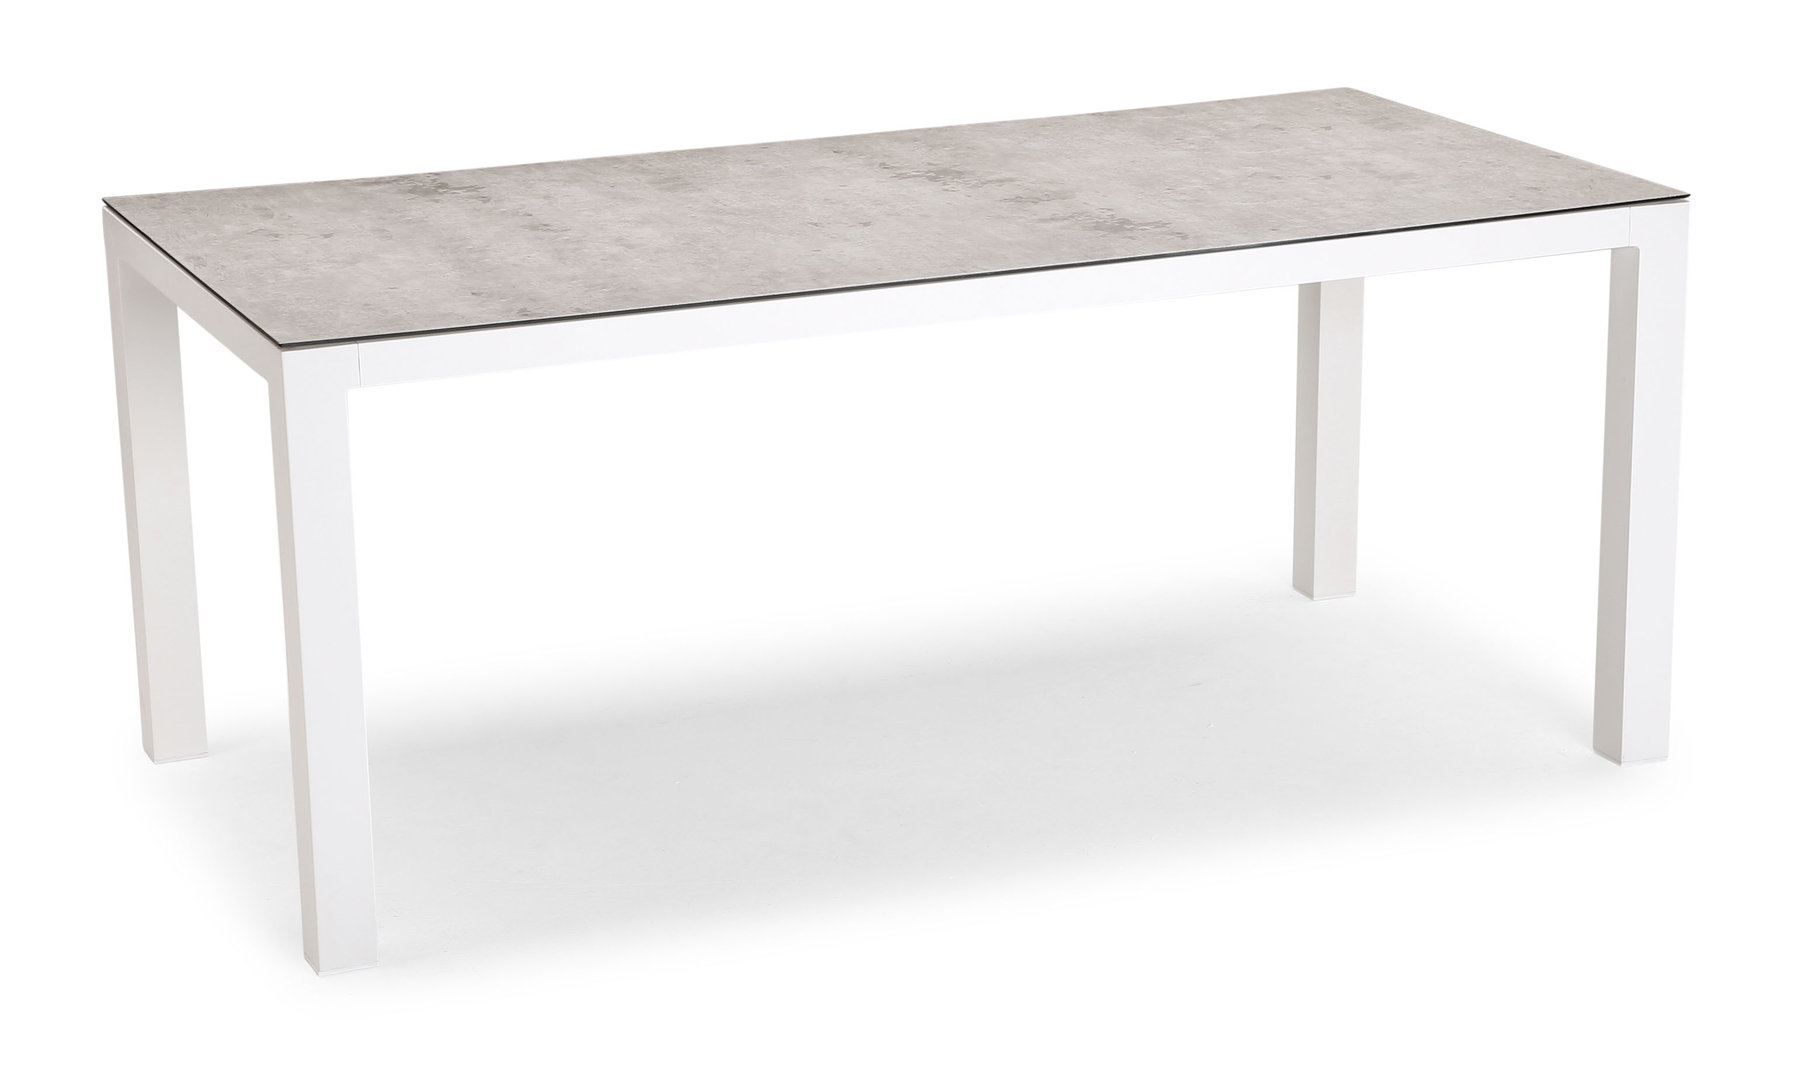 Tisch Houston 210x90 cm, weiß/silber - ebh Betriebseinrichtungen GmbH